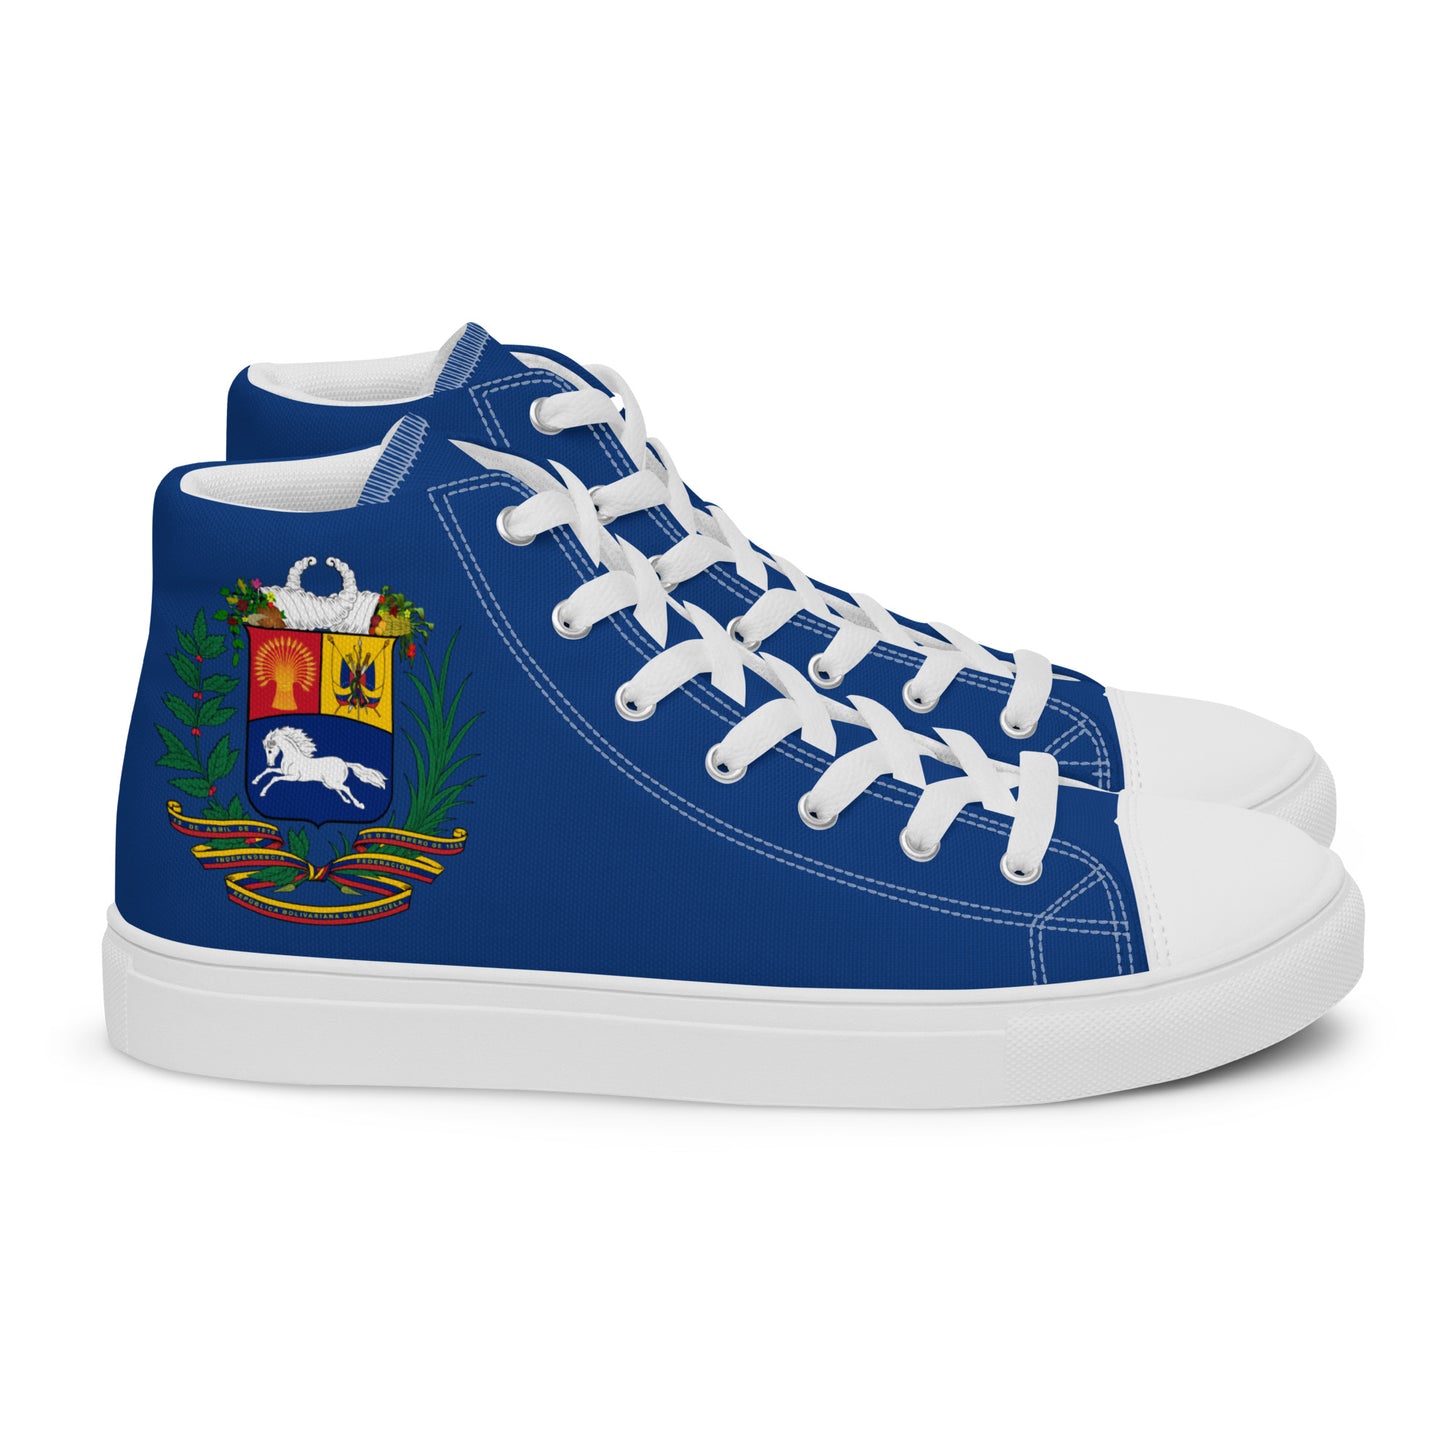 Venezuela - Men - Blue - High top shoes